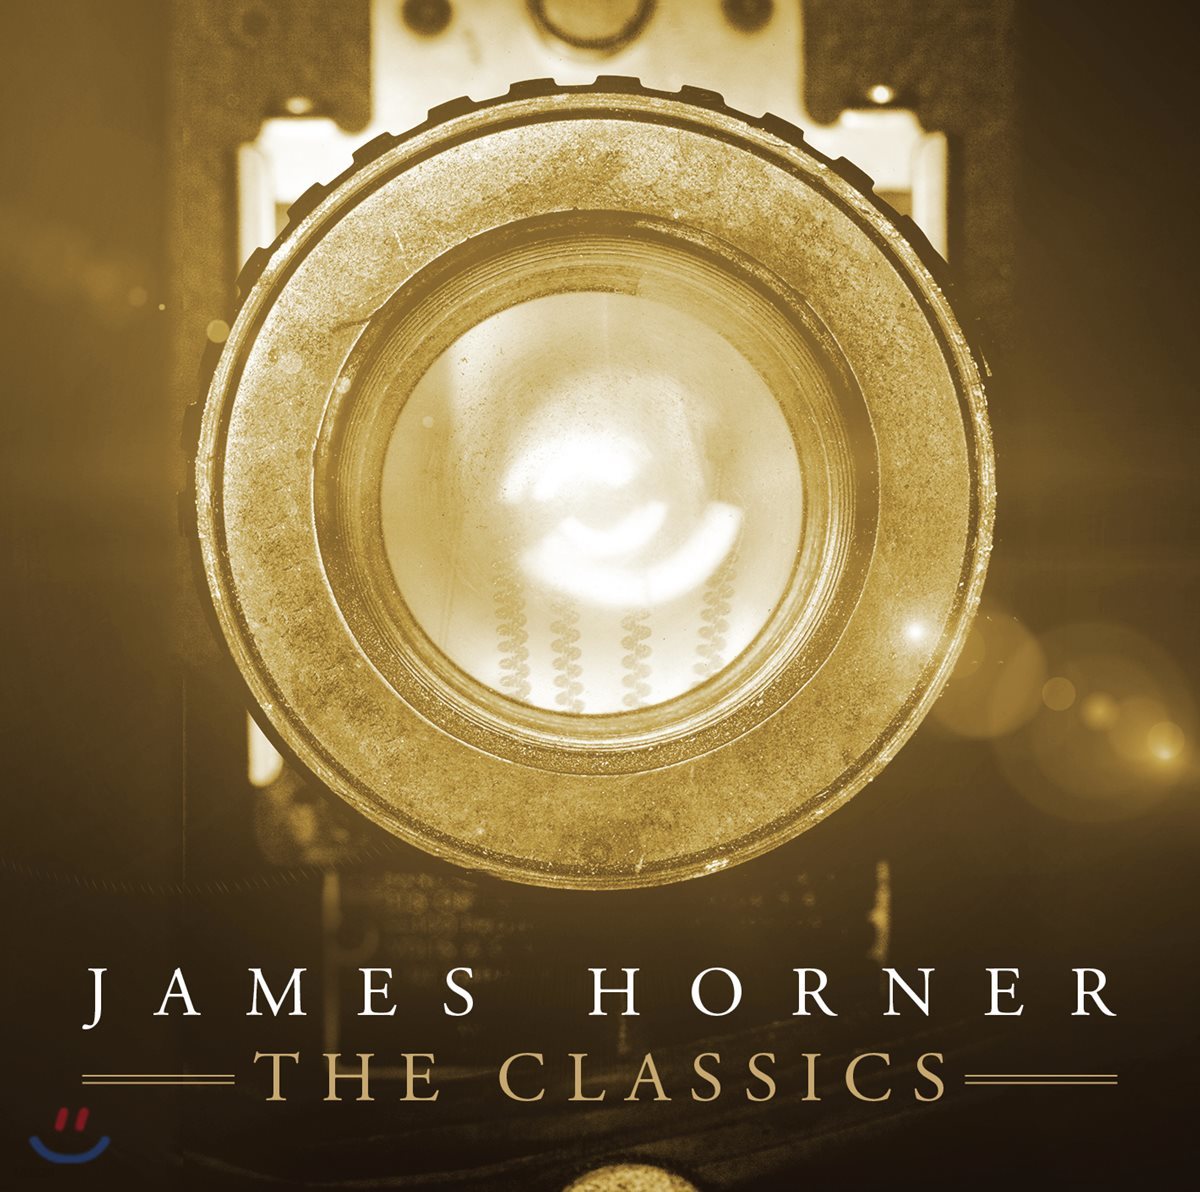 제임스 호너 영화음악 베스트 앨범 (James Horner - The Classics)